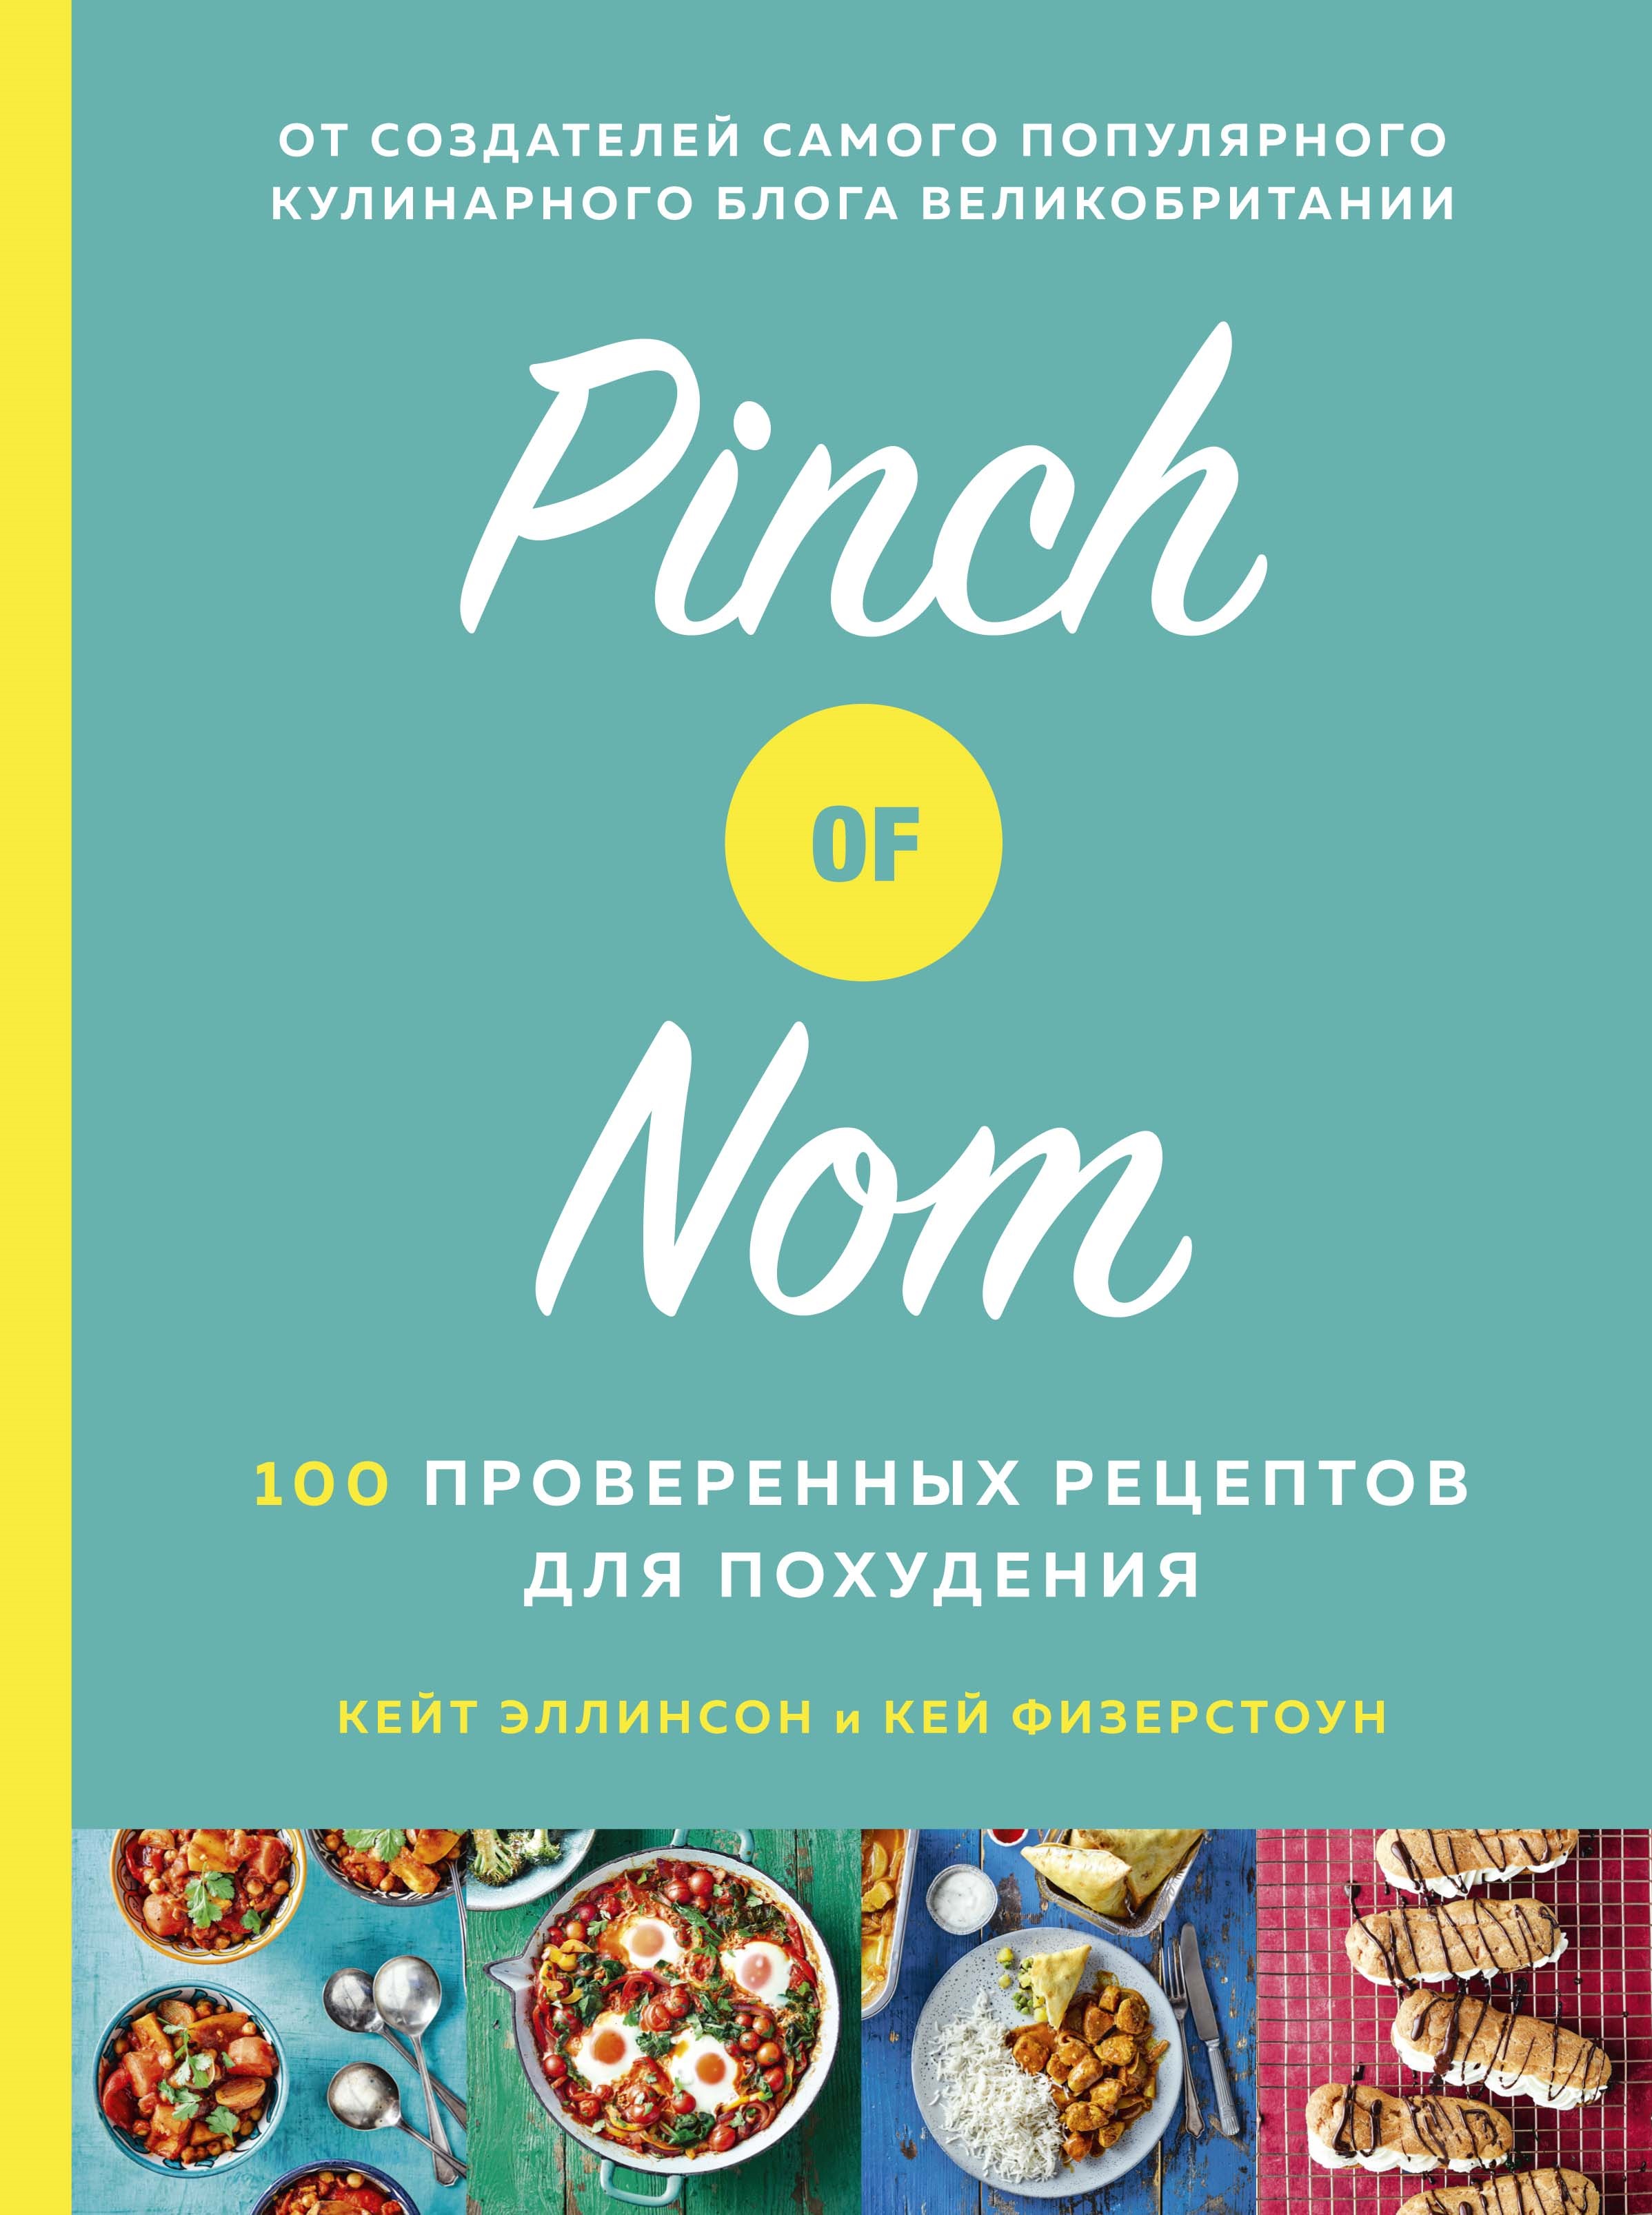 Физерстоун Кей Pinch of Nom: 100 проверенных рецептов для похудения allinson kate физерстоун кей pinch of nom comfort food 100 slimming satisfying recipes